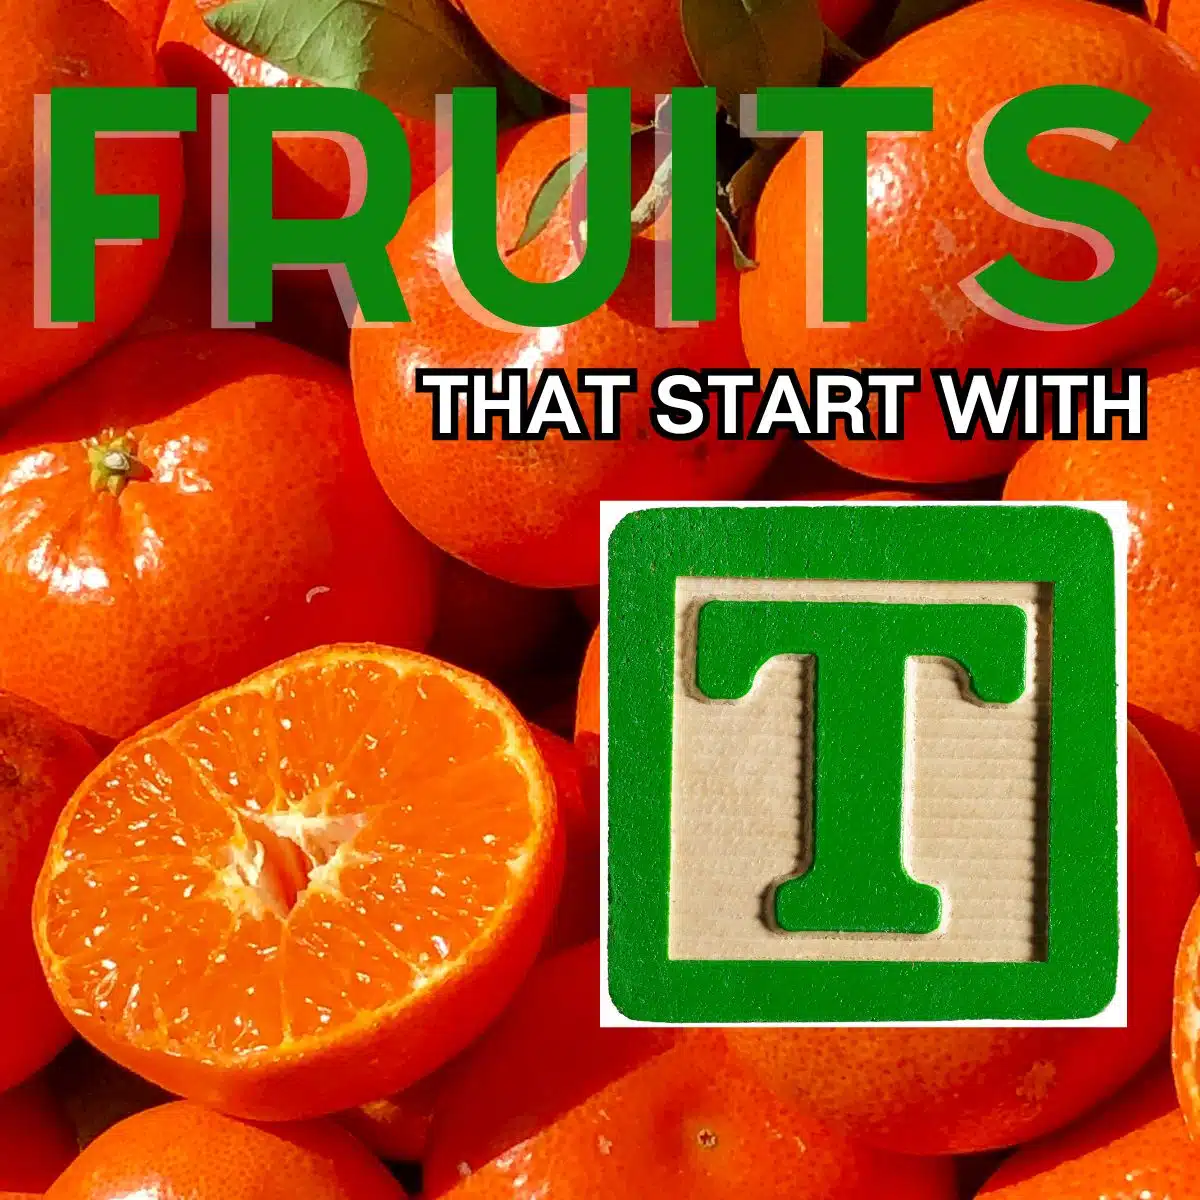 감귤이 특징인 문자 T로 시작하는 과일의 정사각형 이미지입니다.